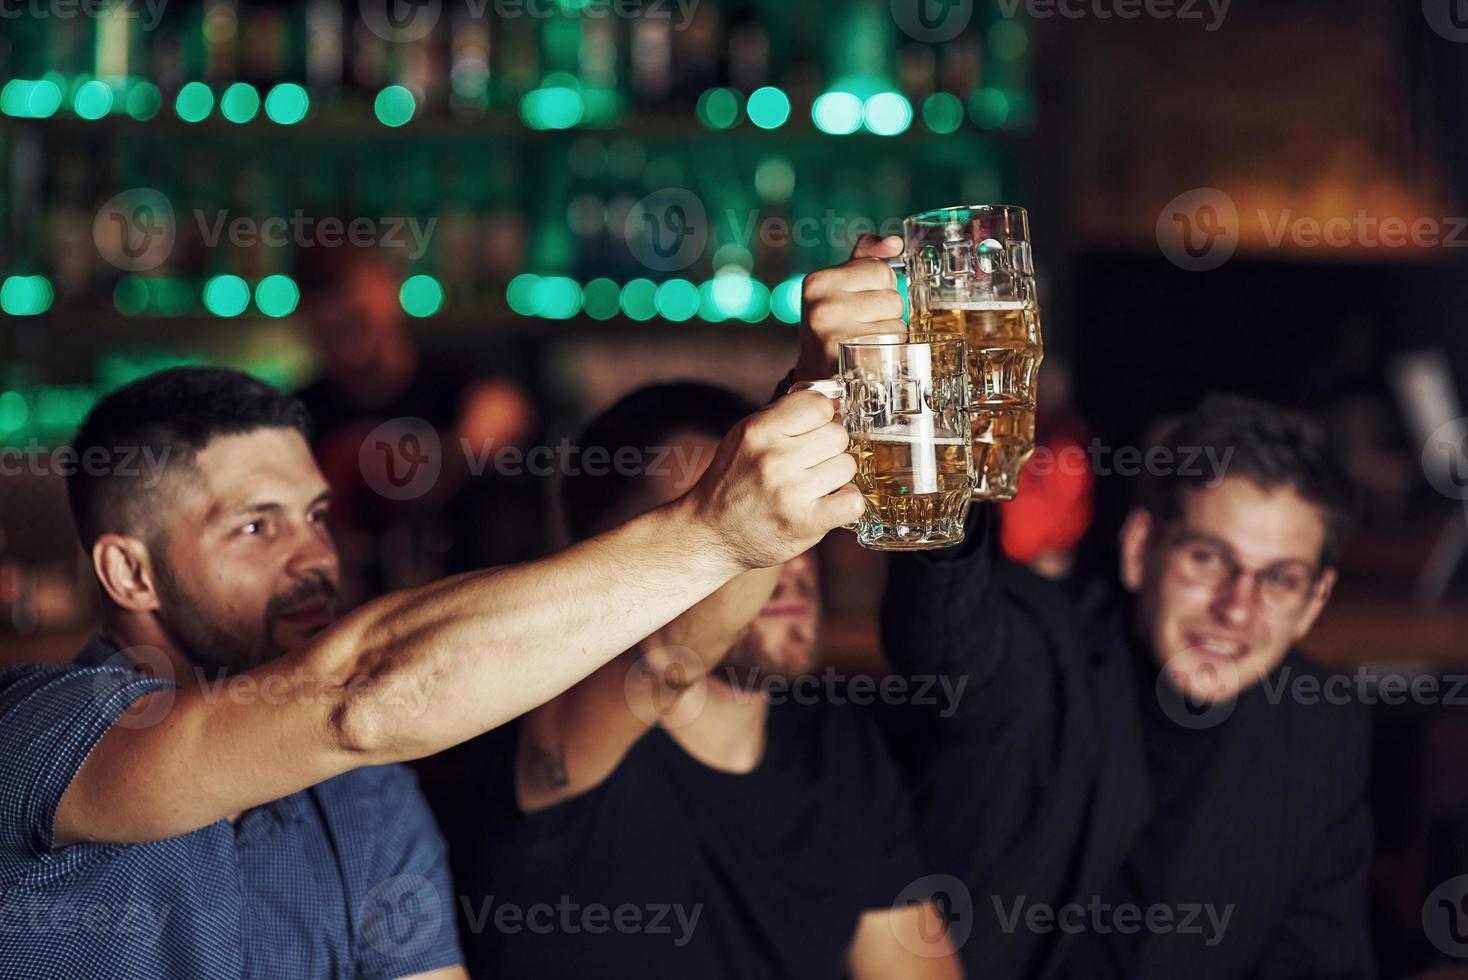 copos batendo. três fãs de esportes em um bar assistindo futebol. com cerveja nas mãos foto